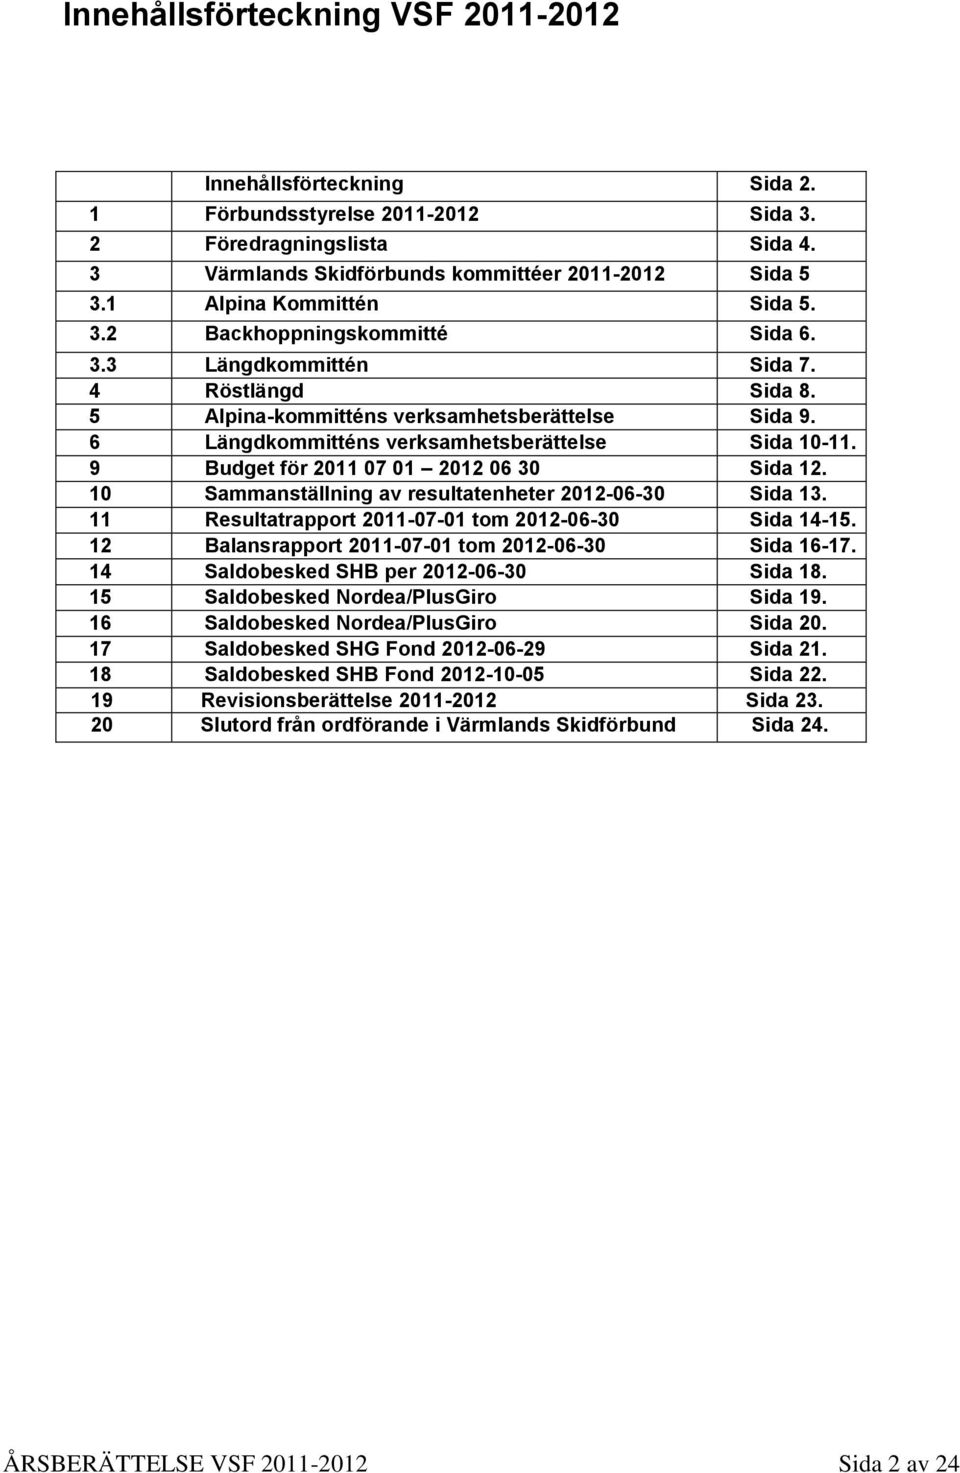 6 Längdkommitténs verksamhetsberättelse Sida 10-11. 9 Budget för 2011 07 01 2012 06 30 Sida 12. 10 Sammanställning av resultatenheter 2012-06-30 Sida 13.